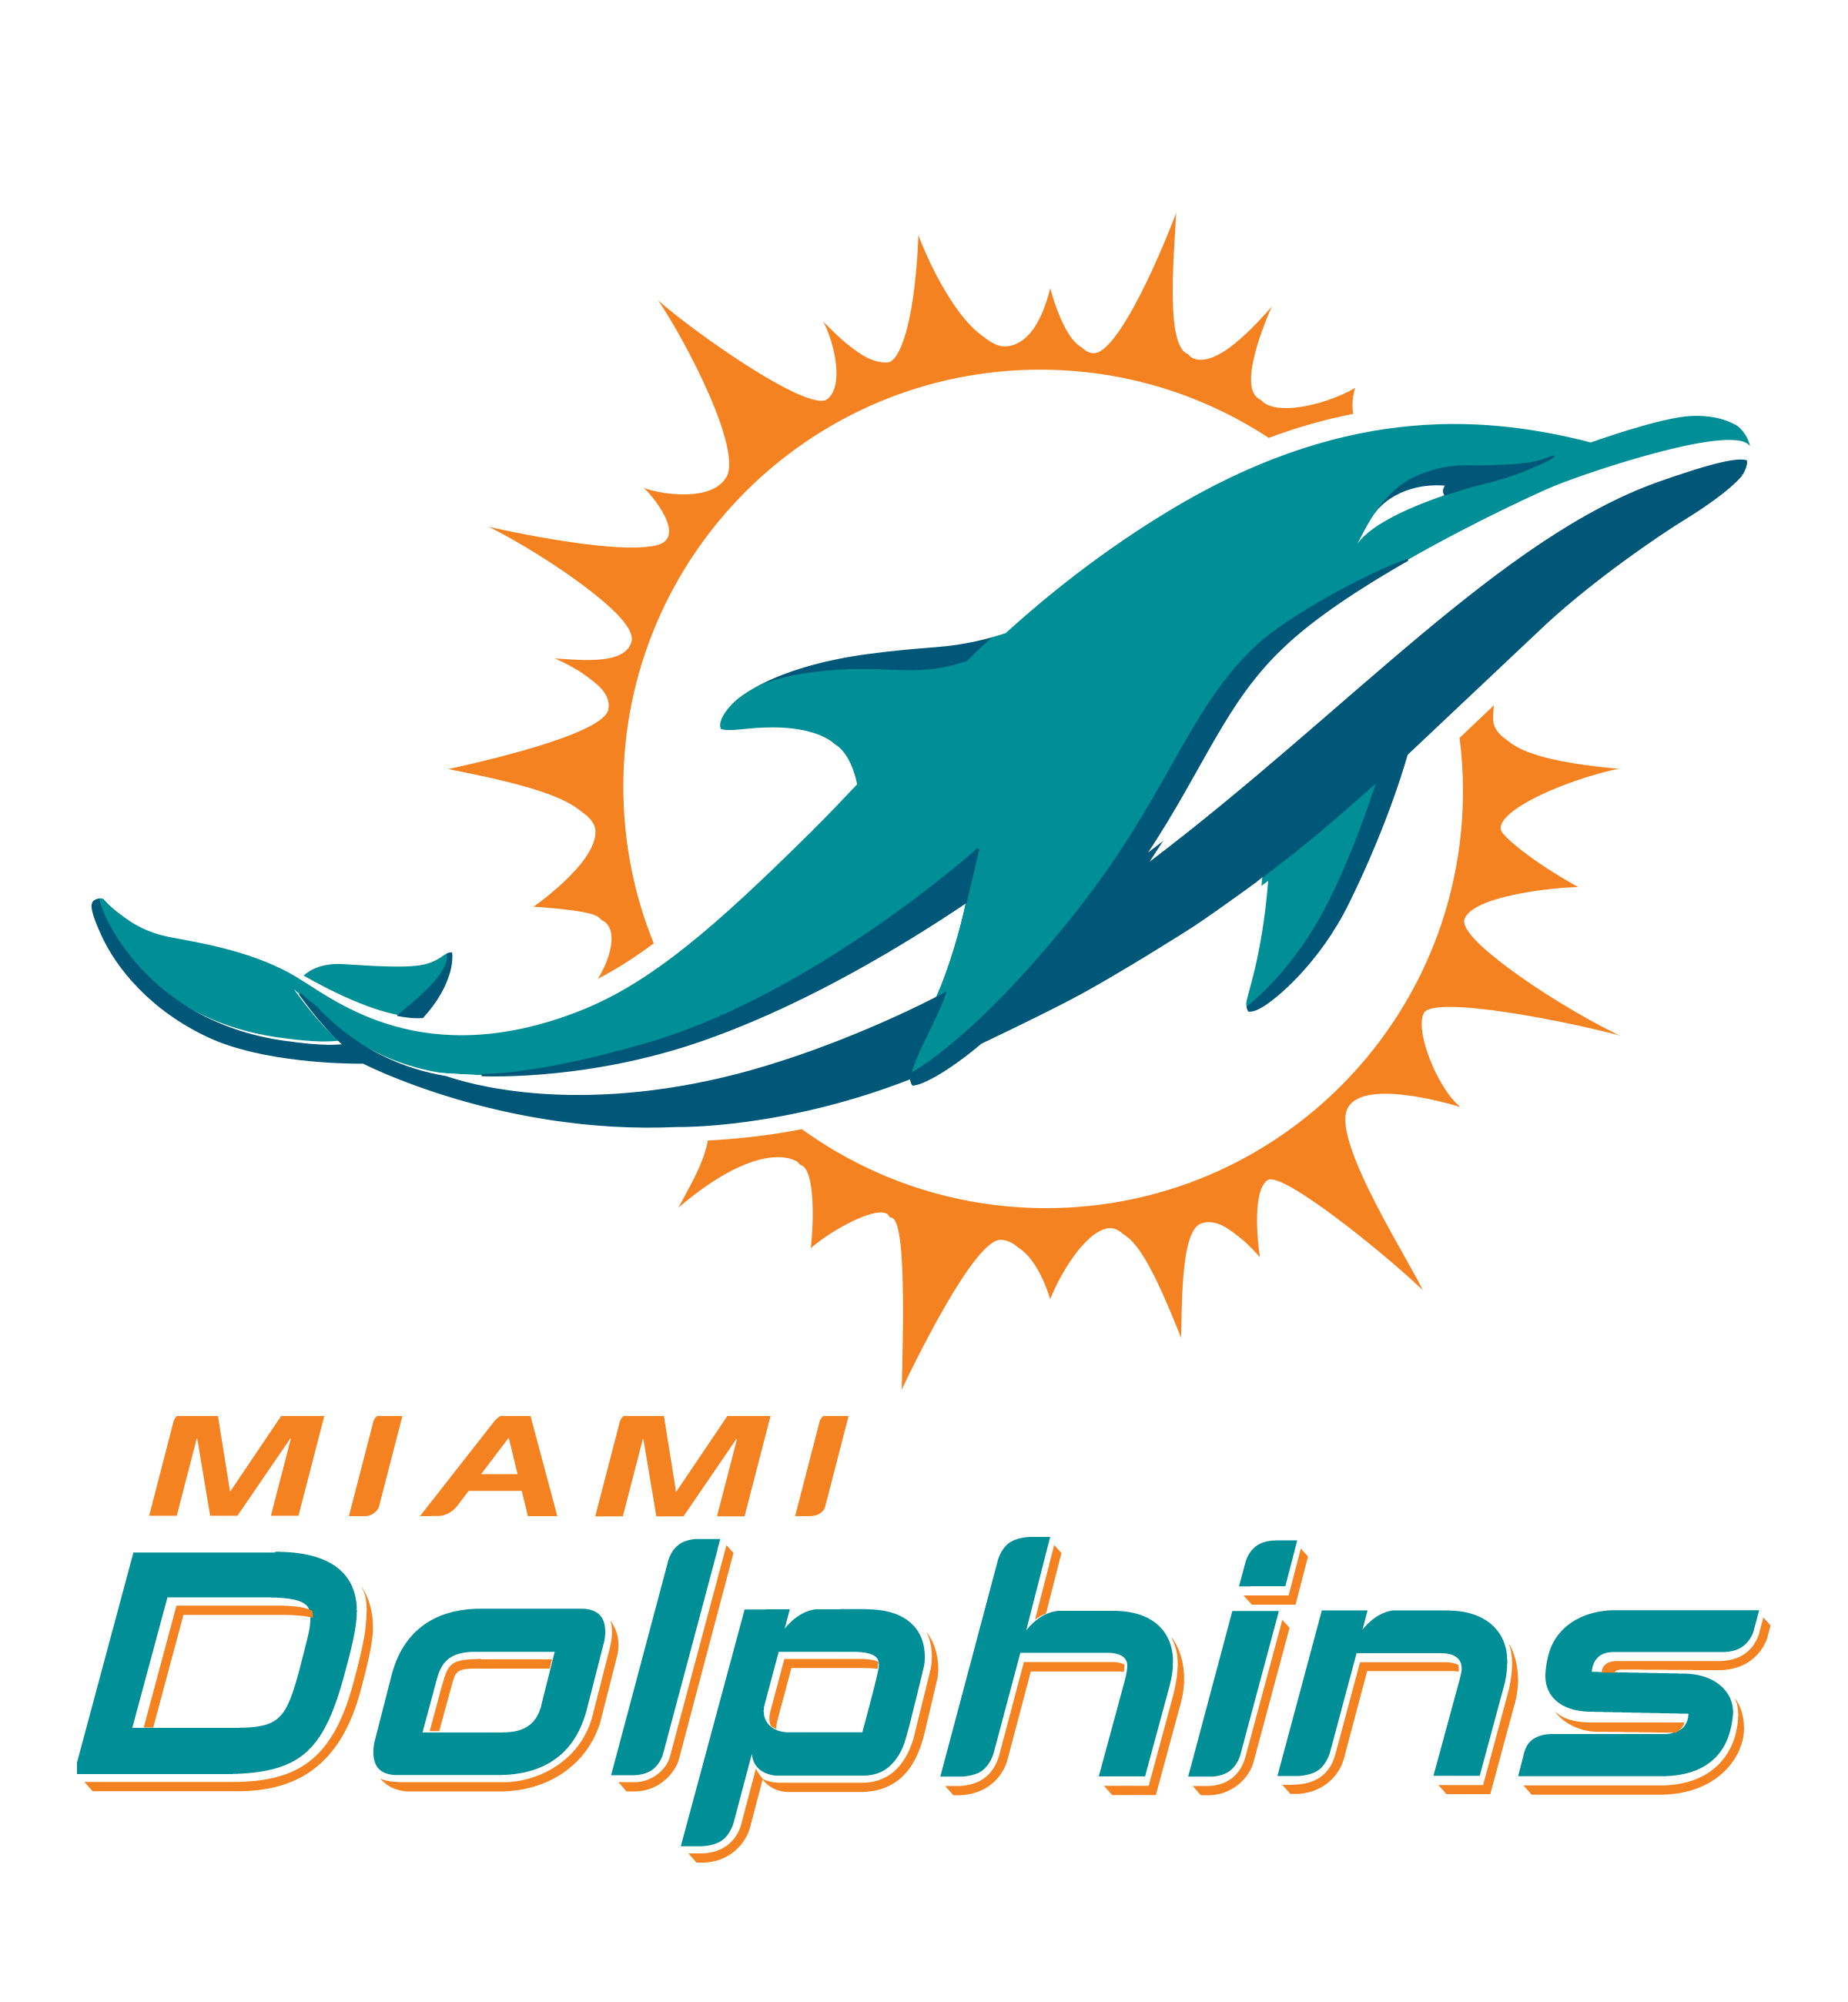 Miami Dolphins Logo - Miami dolphins logo - logo success